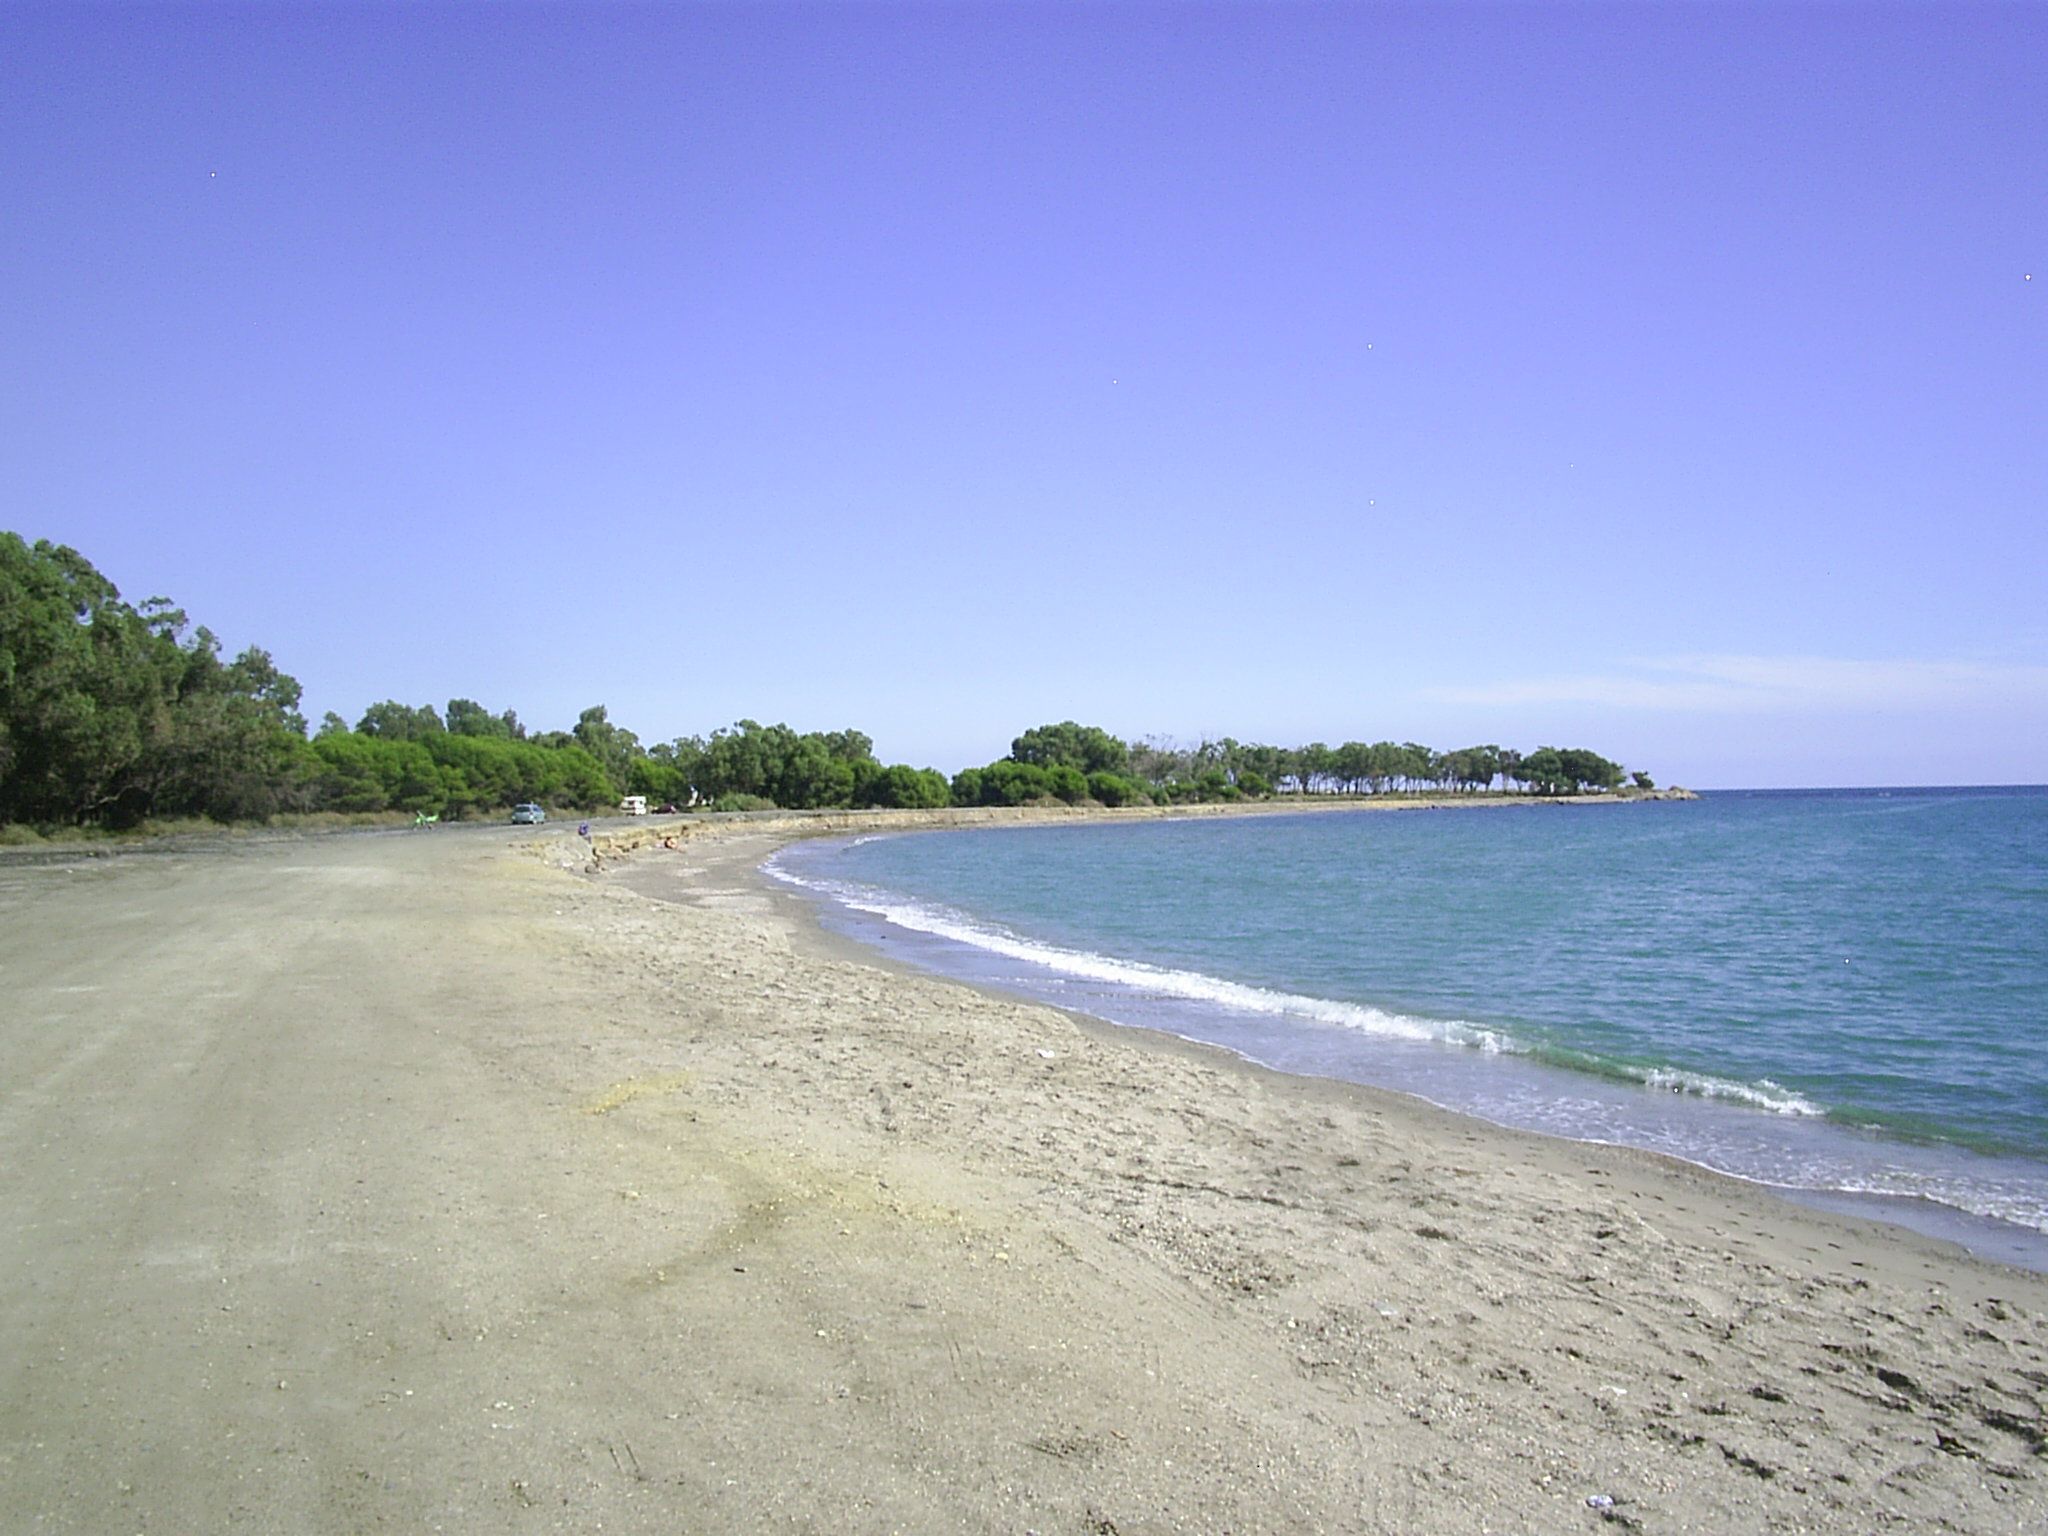 Una decena de Banderas Negras. Playa de Quitapellejos-Palomares con contaminación radioactiva. 